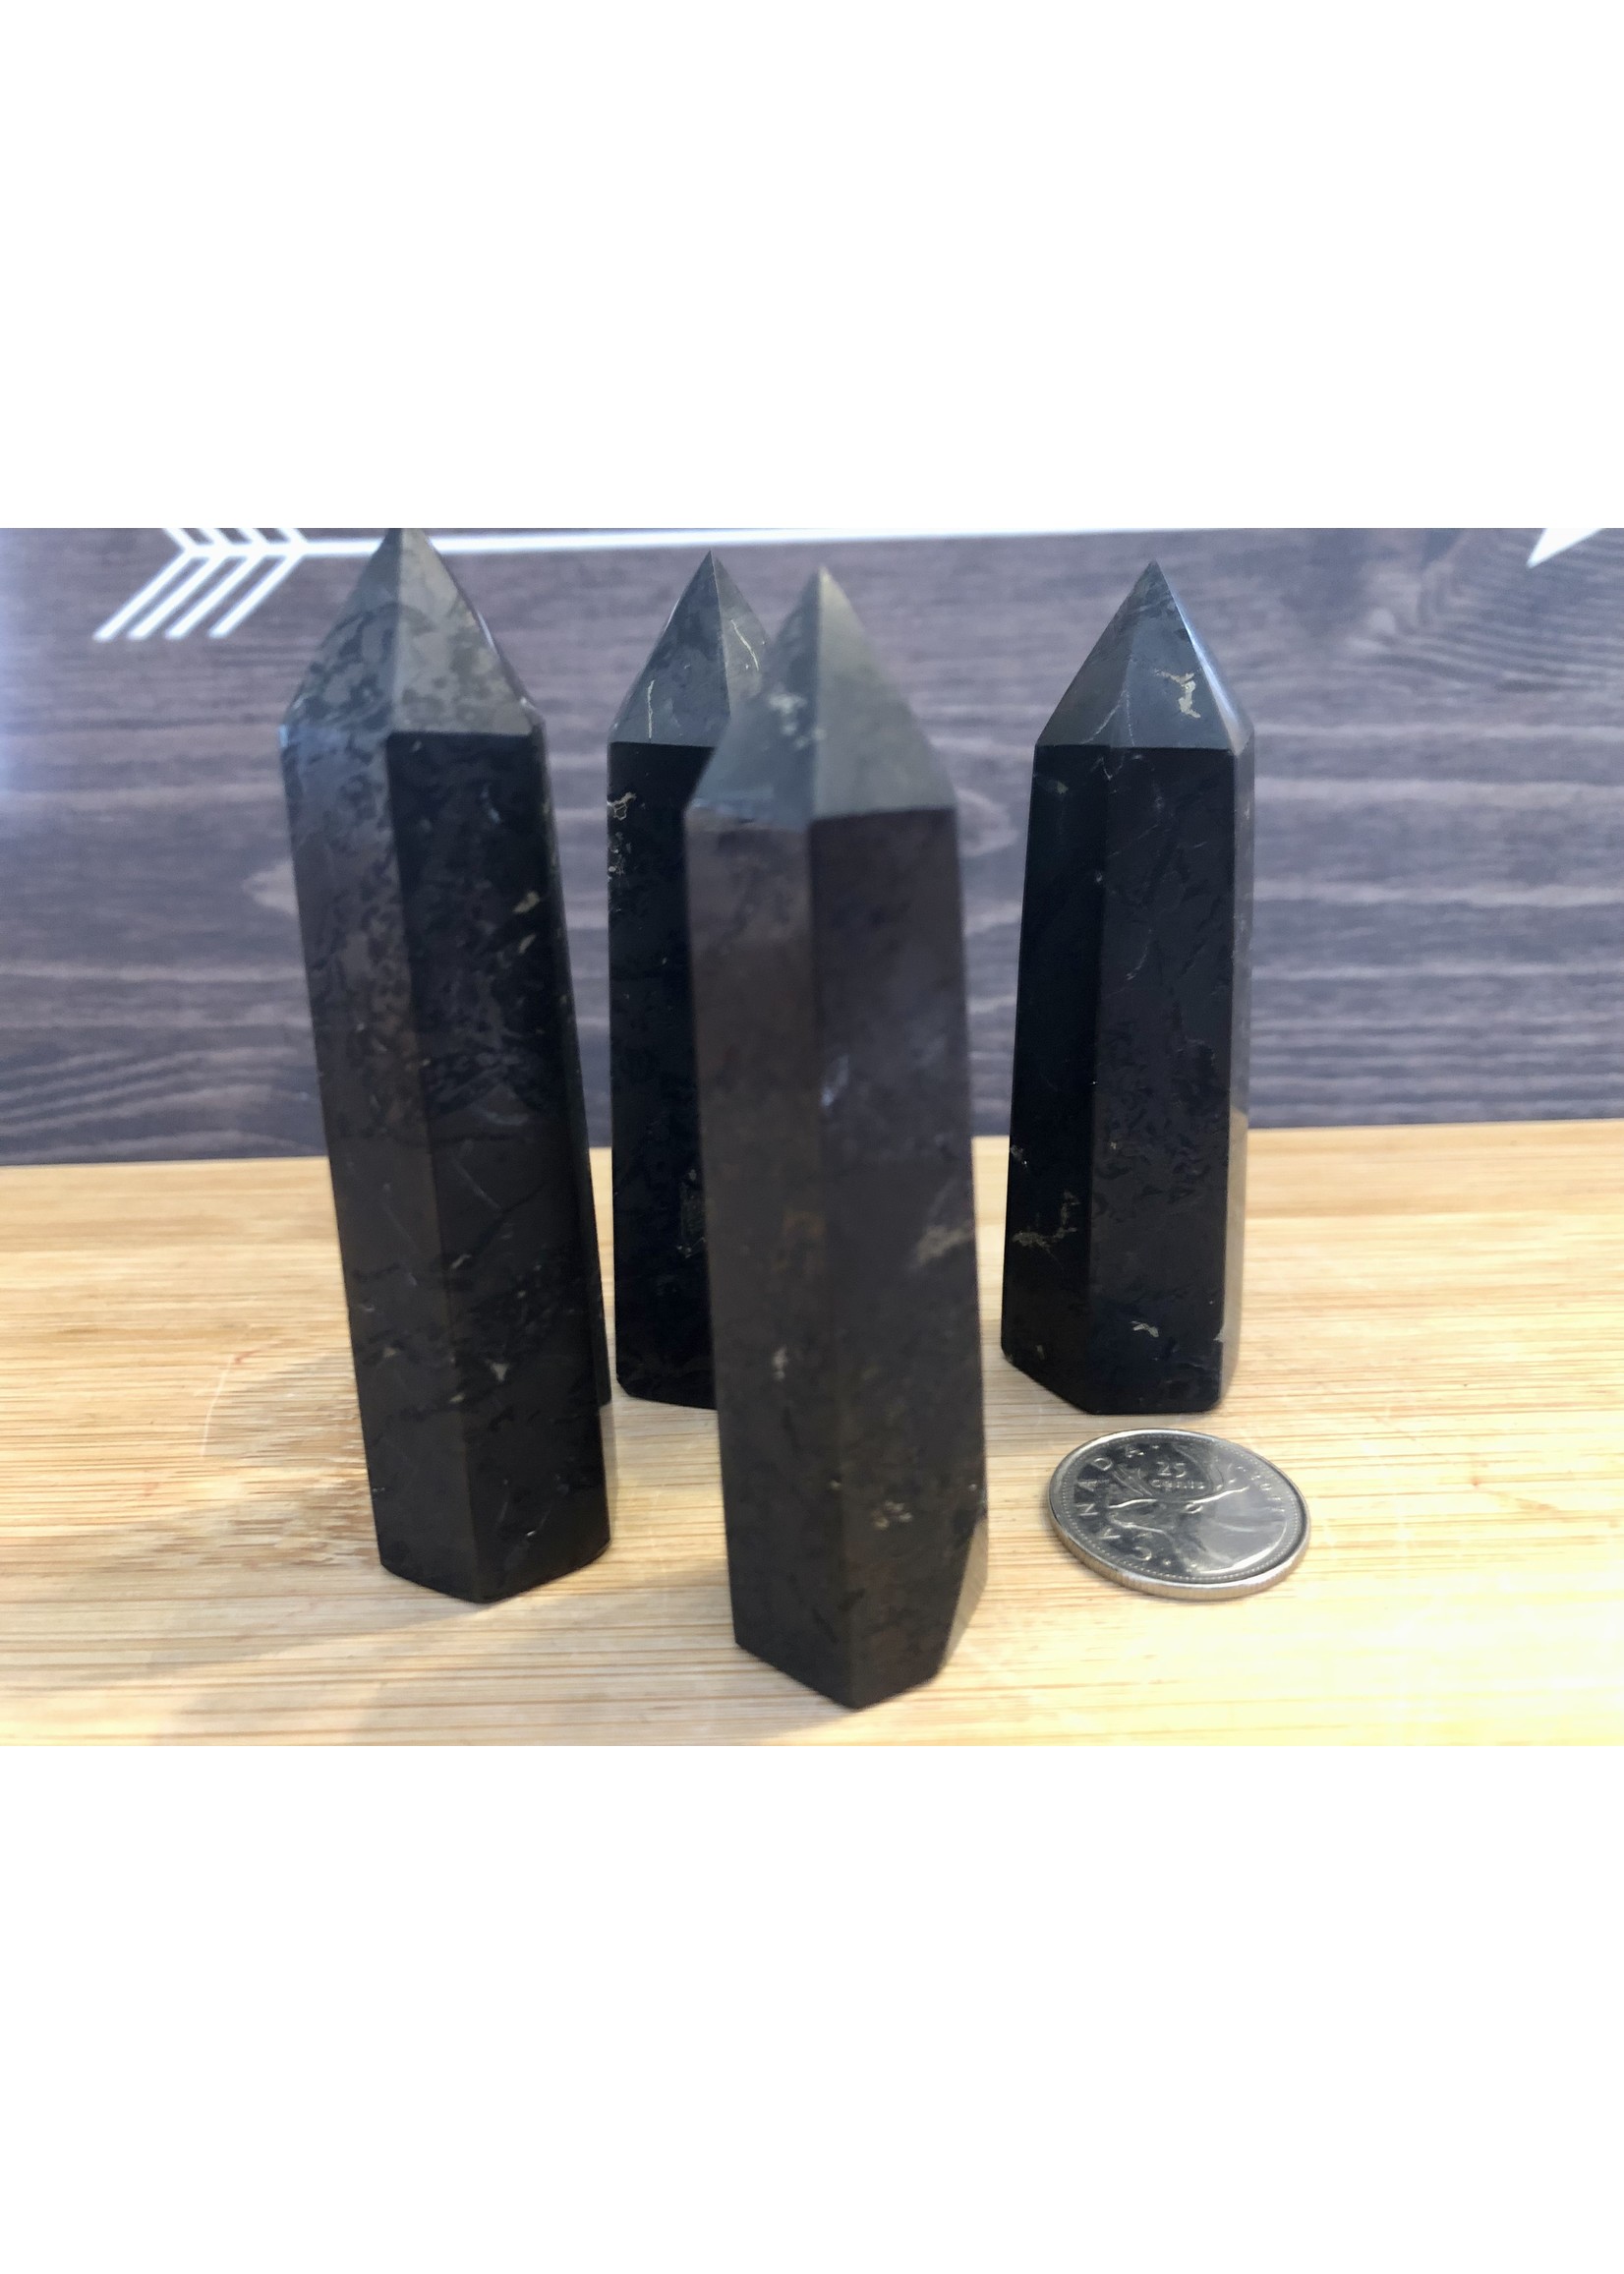 shungite naturelle tour, pierre noire qui a une capacité unique remarquable, neutralise perturbations électromagnétiques nocives pour santé